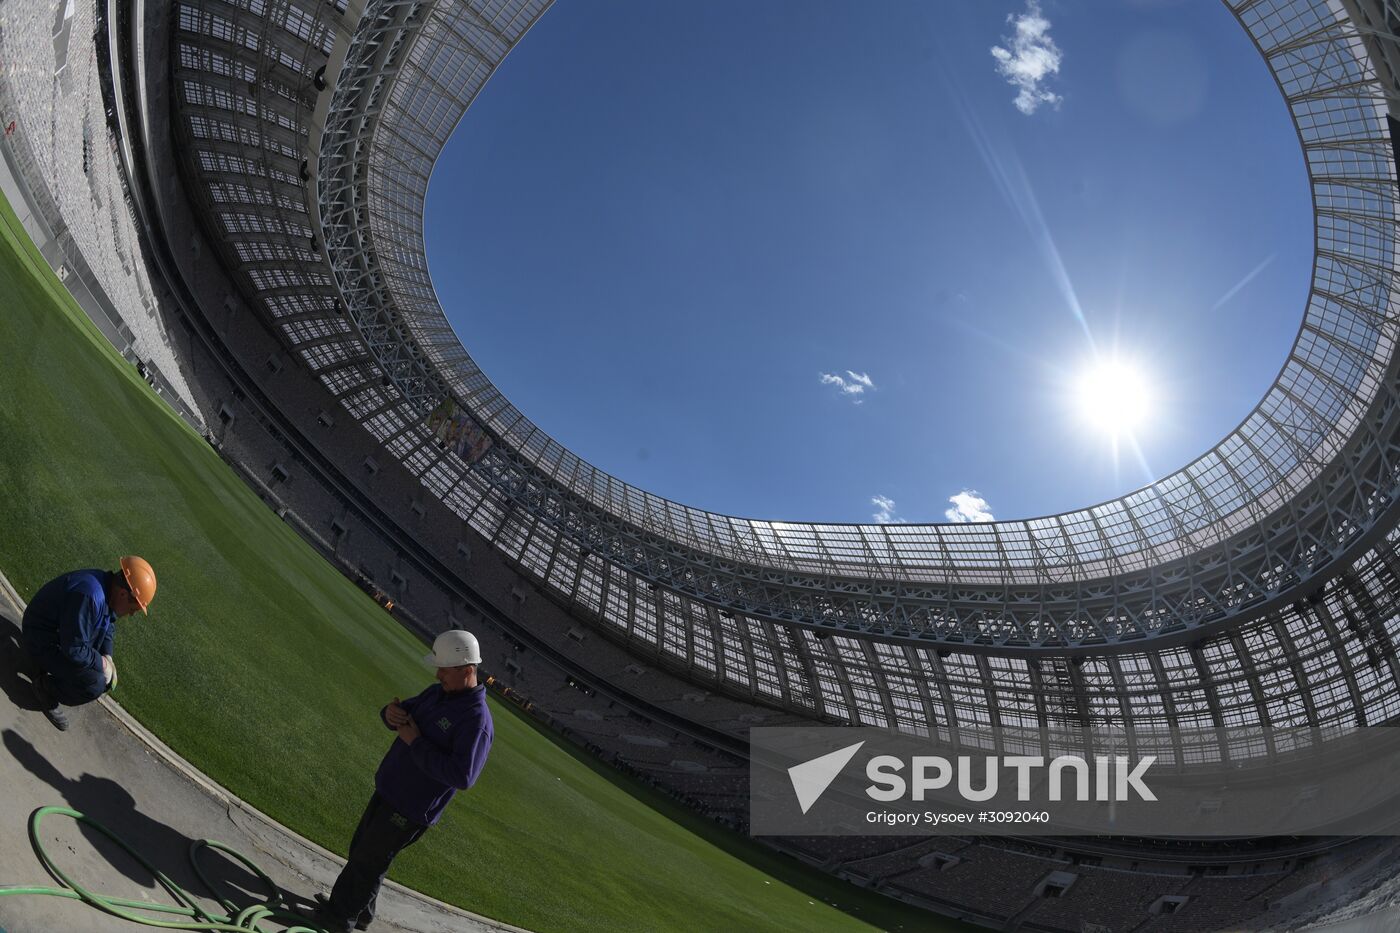 Luzhniki Grand Sports Arena under renovation